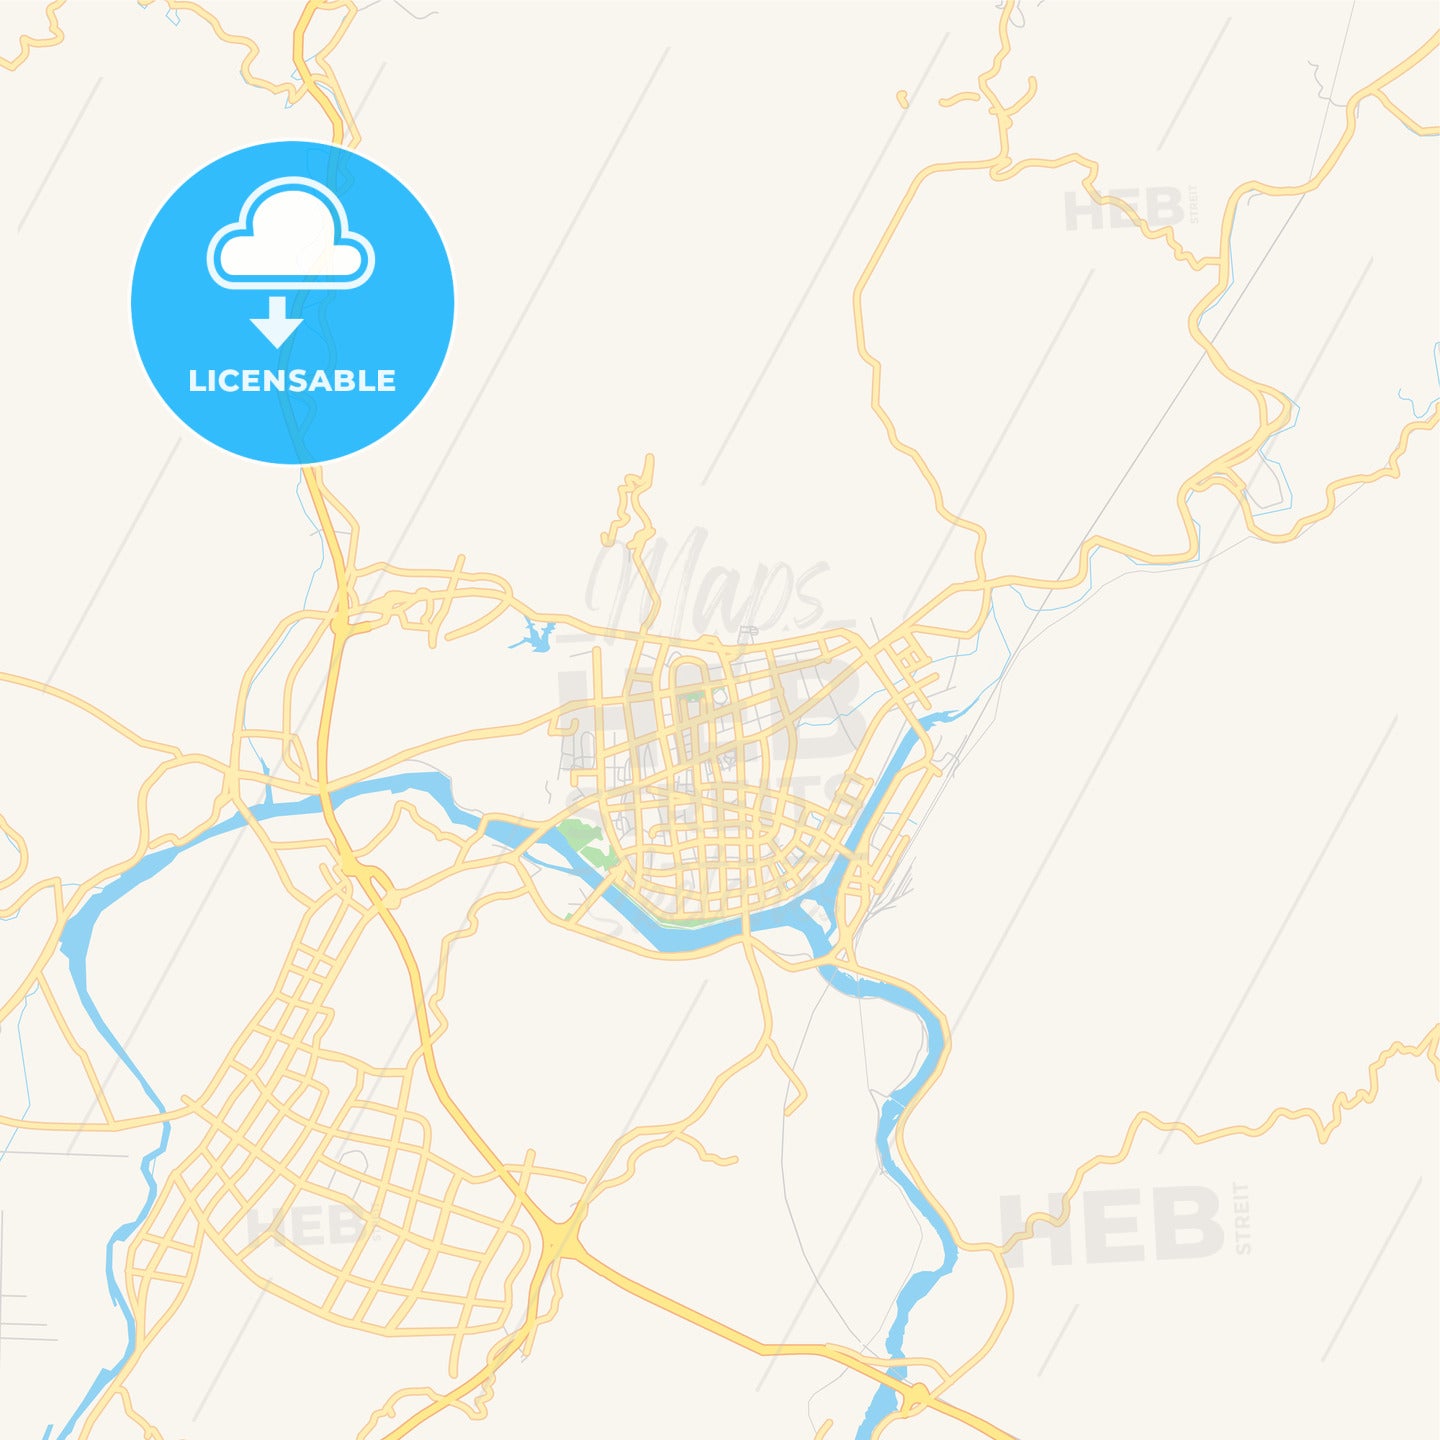 Printable street map of Lishui, China